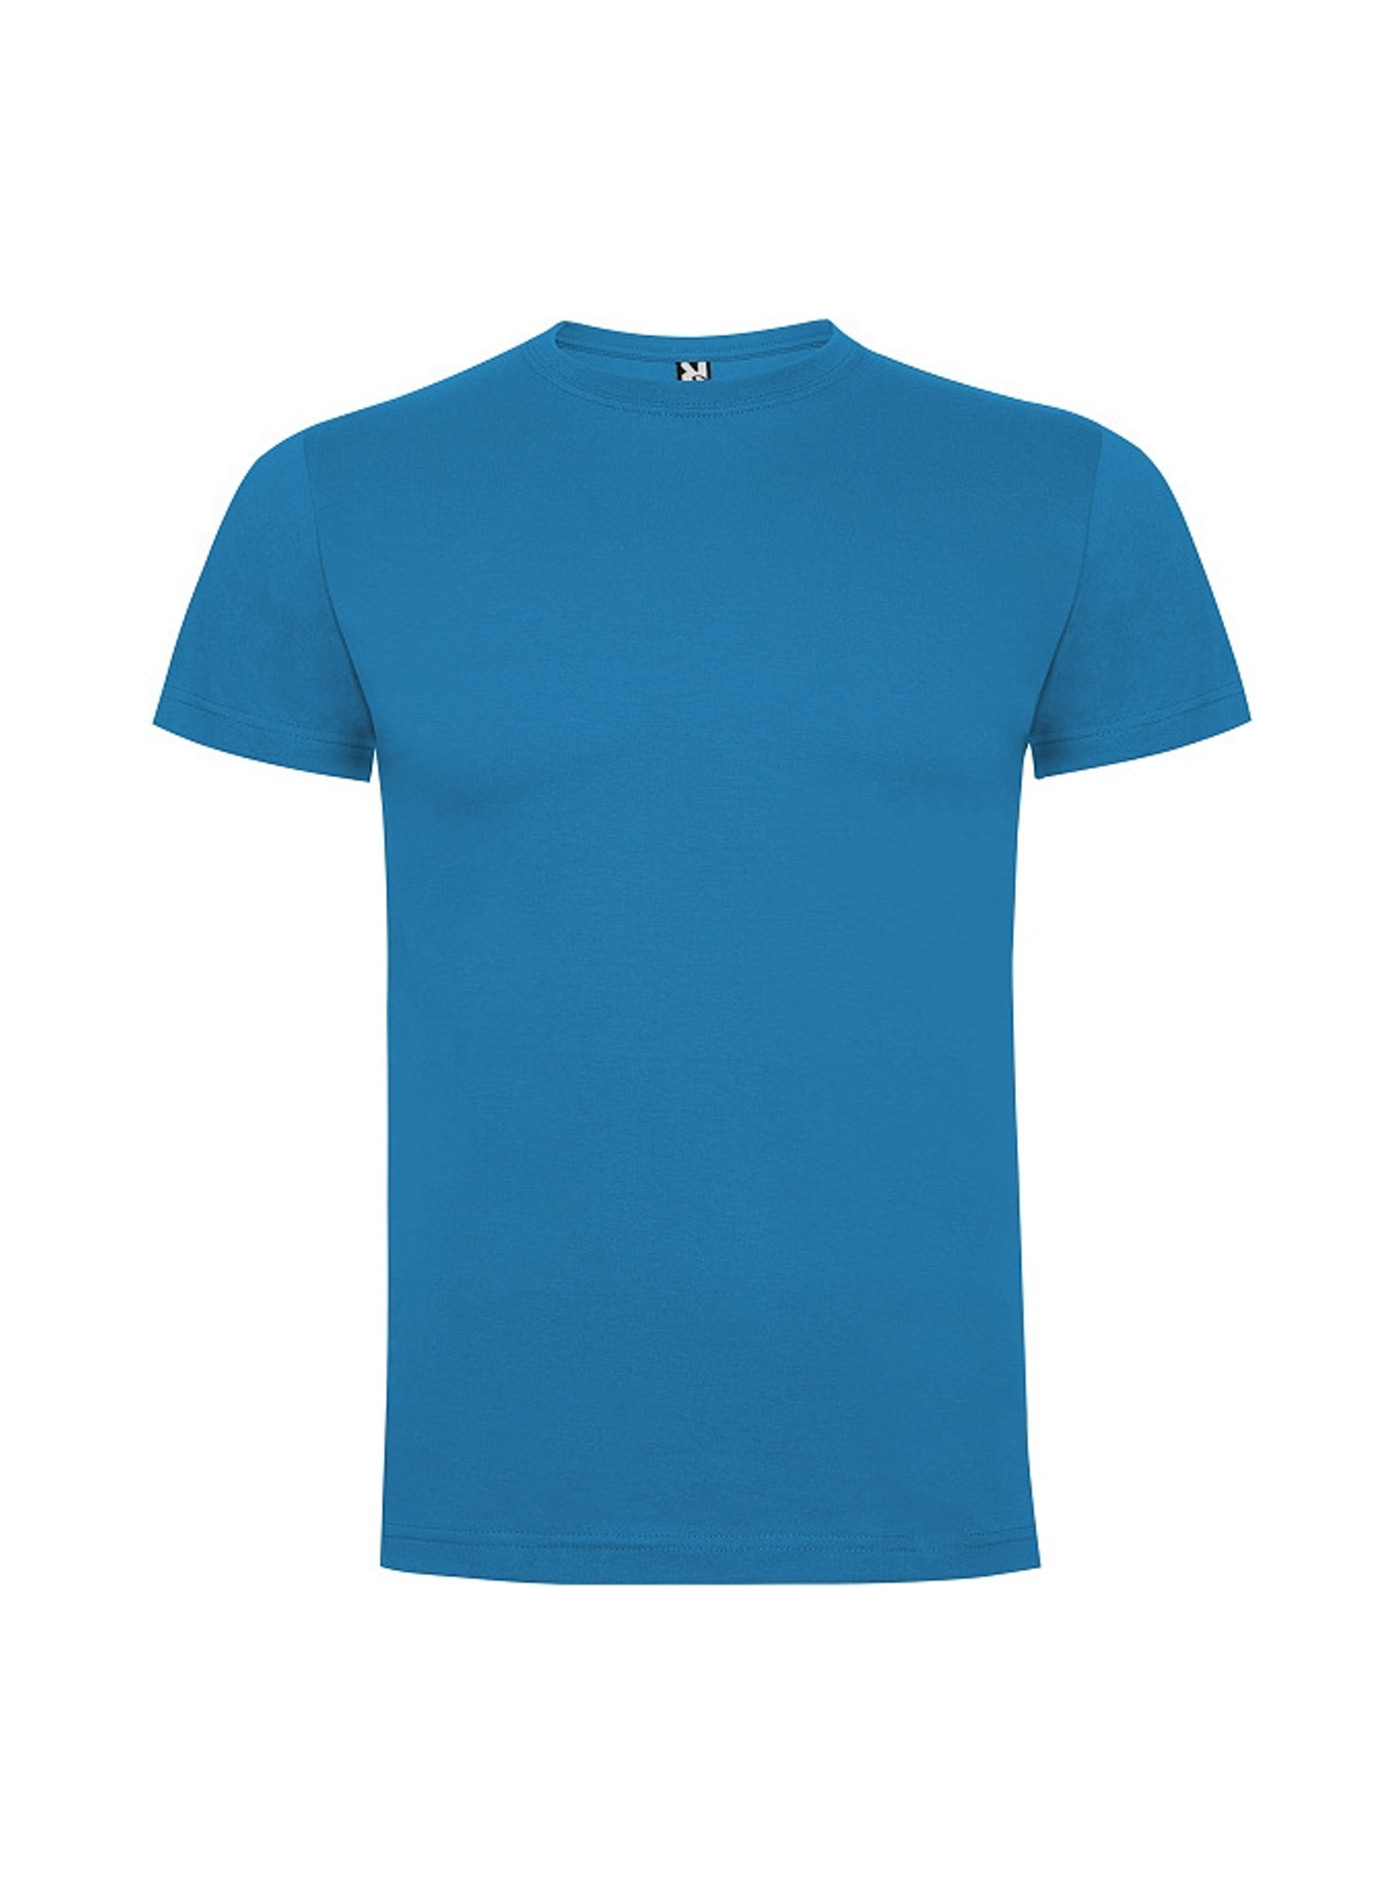 Dětské tričko Roly Dogo premium - Modrá 3-4